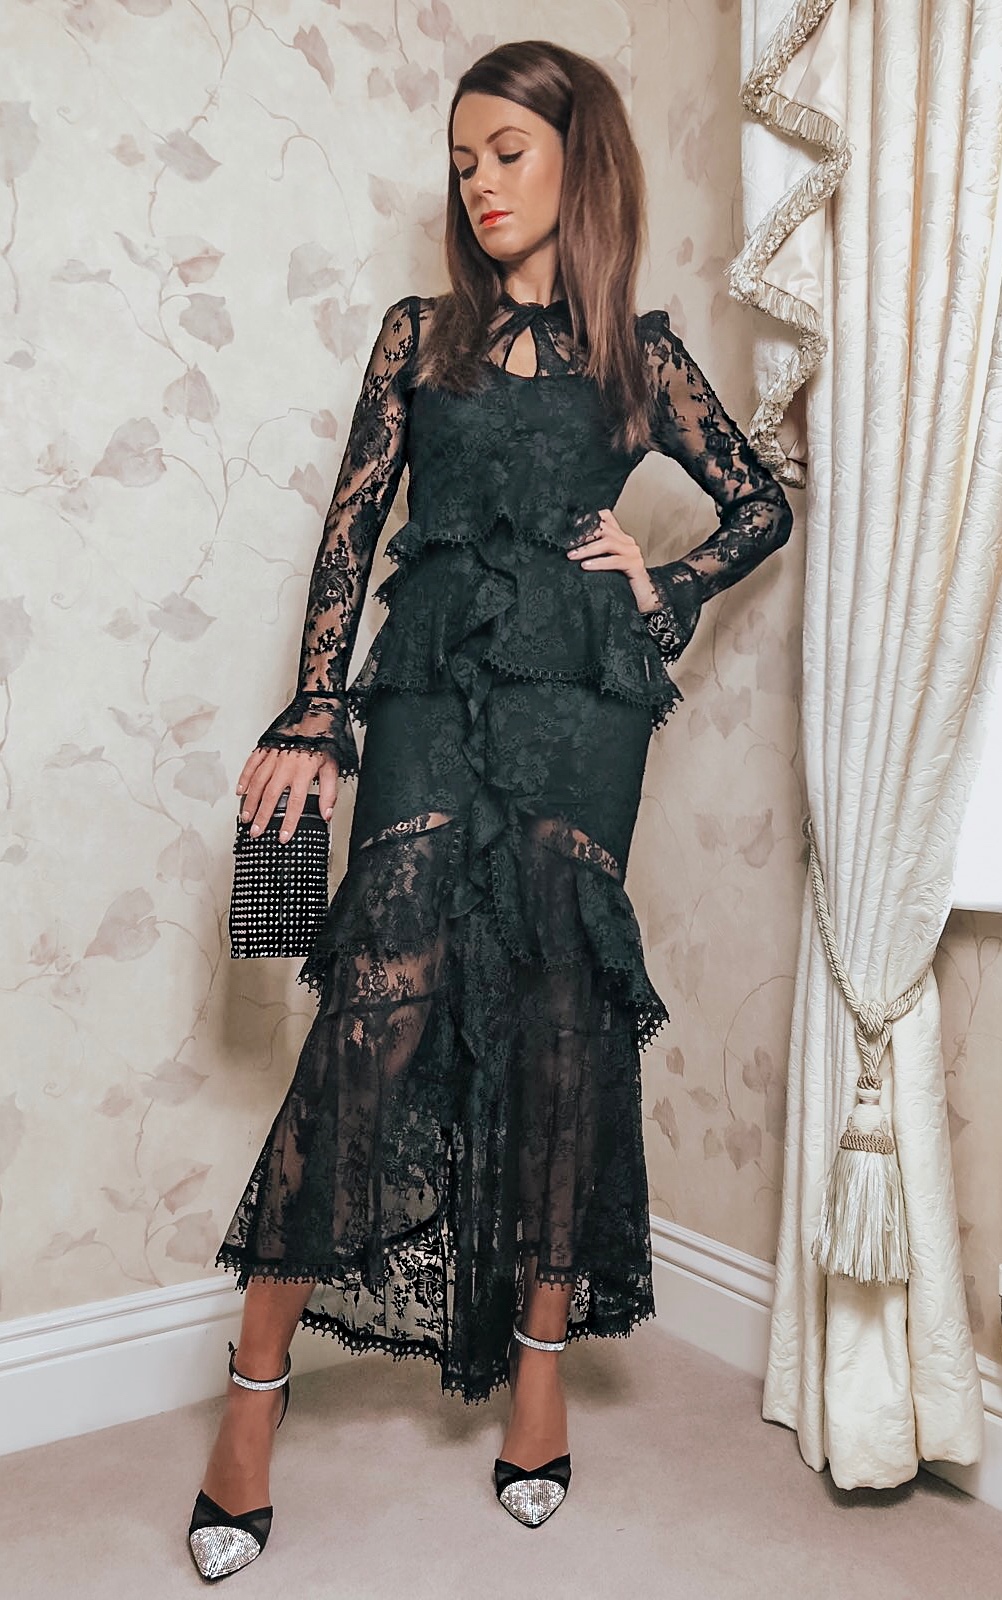 All Over Lace Maxi Dress - Black | ASOS DESIGN gem tassel cylinder clutch | Quiz Diamanté Court Shoes